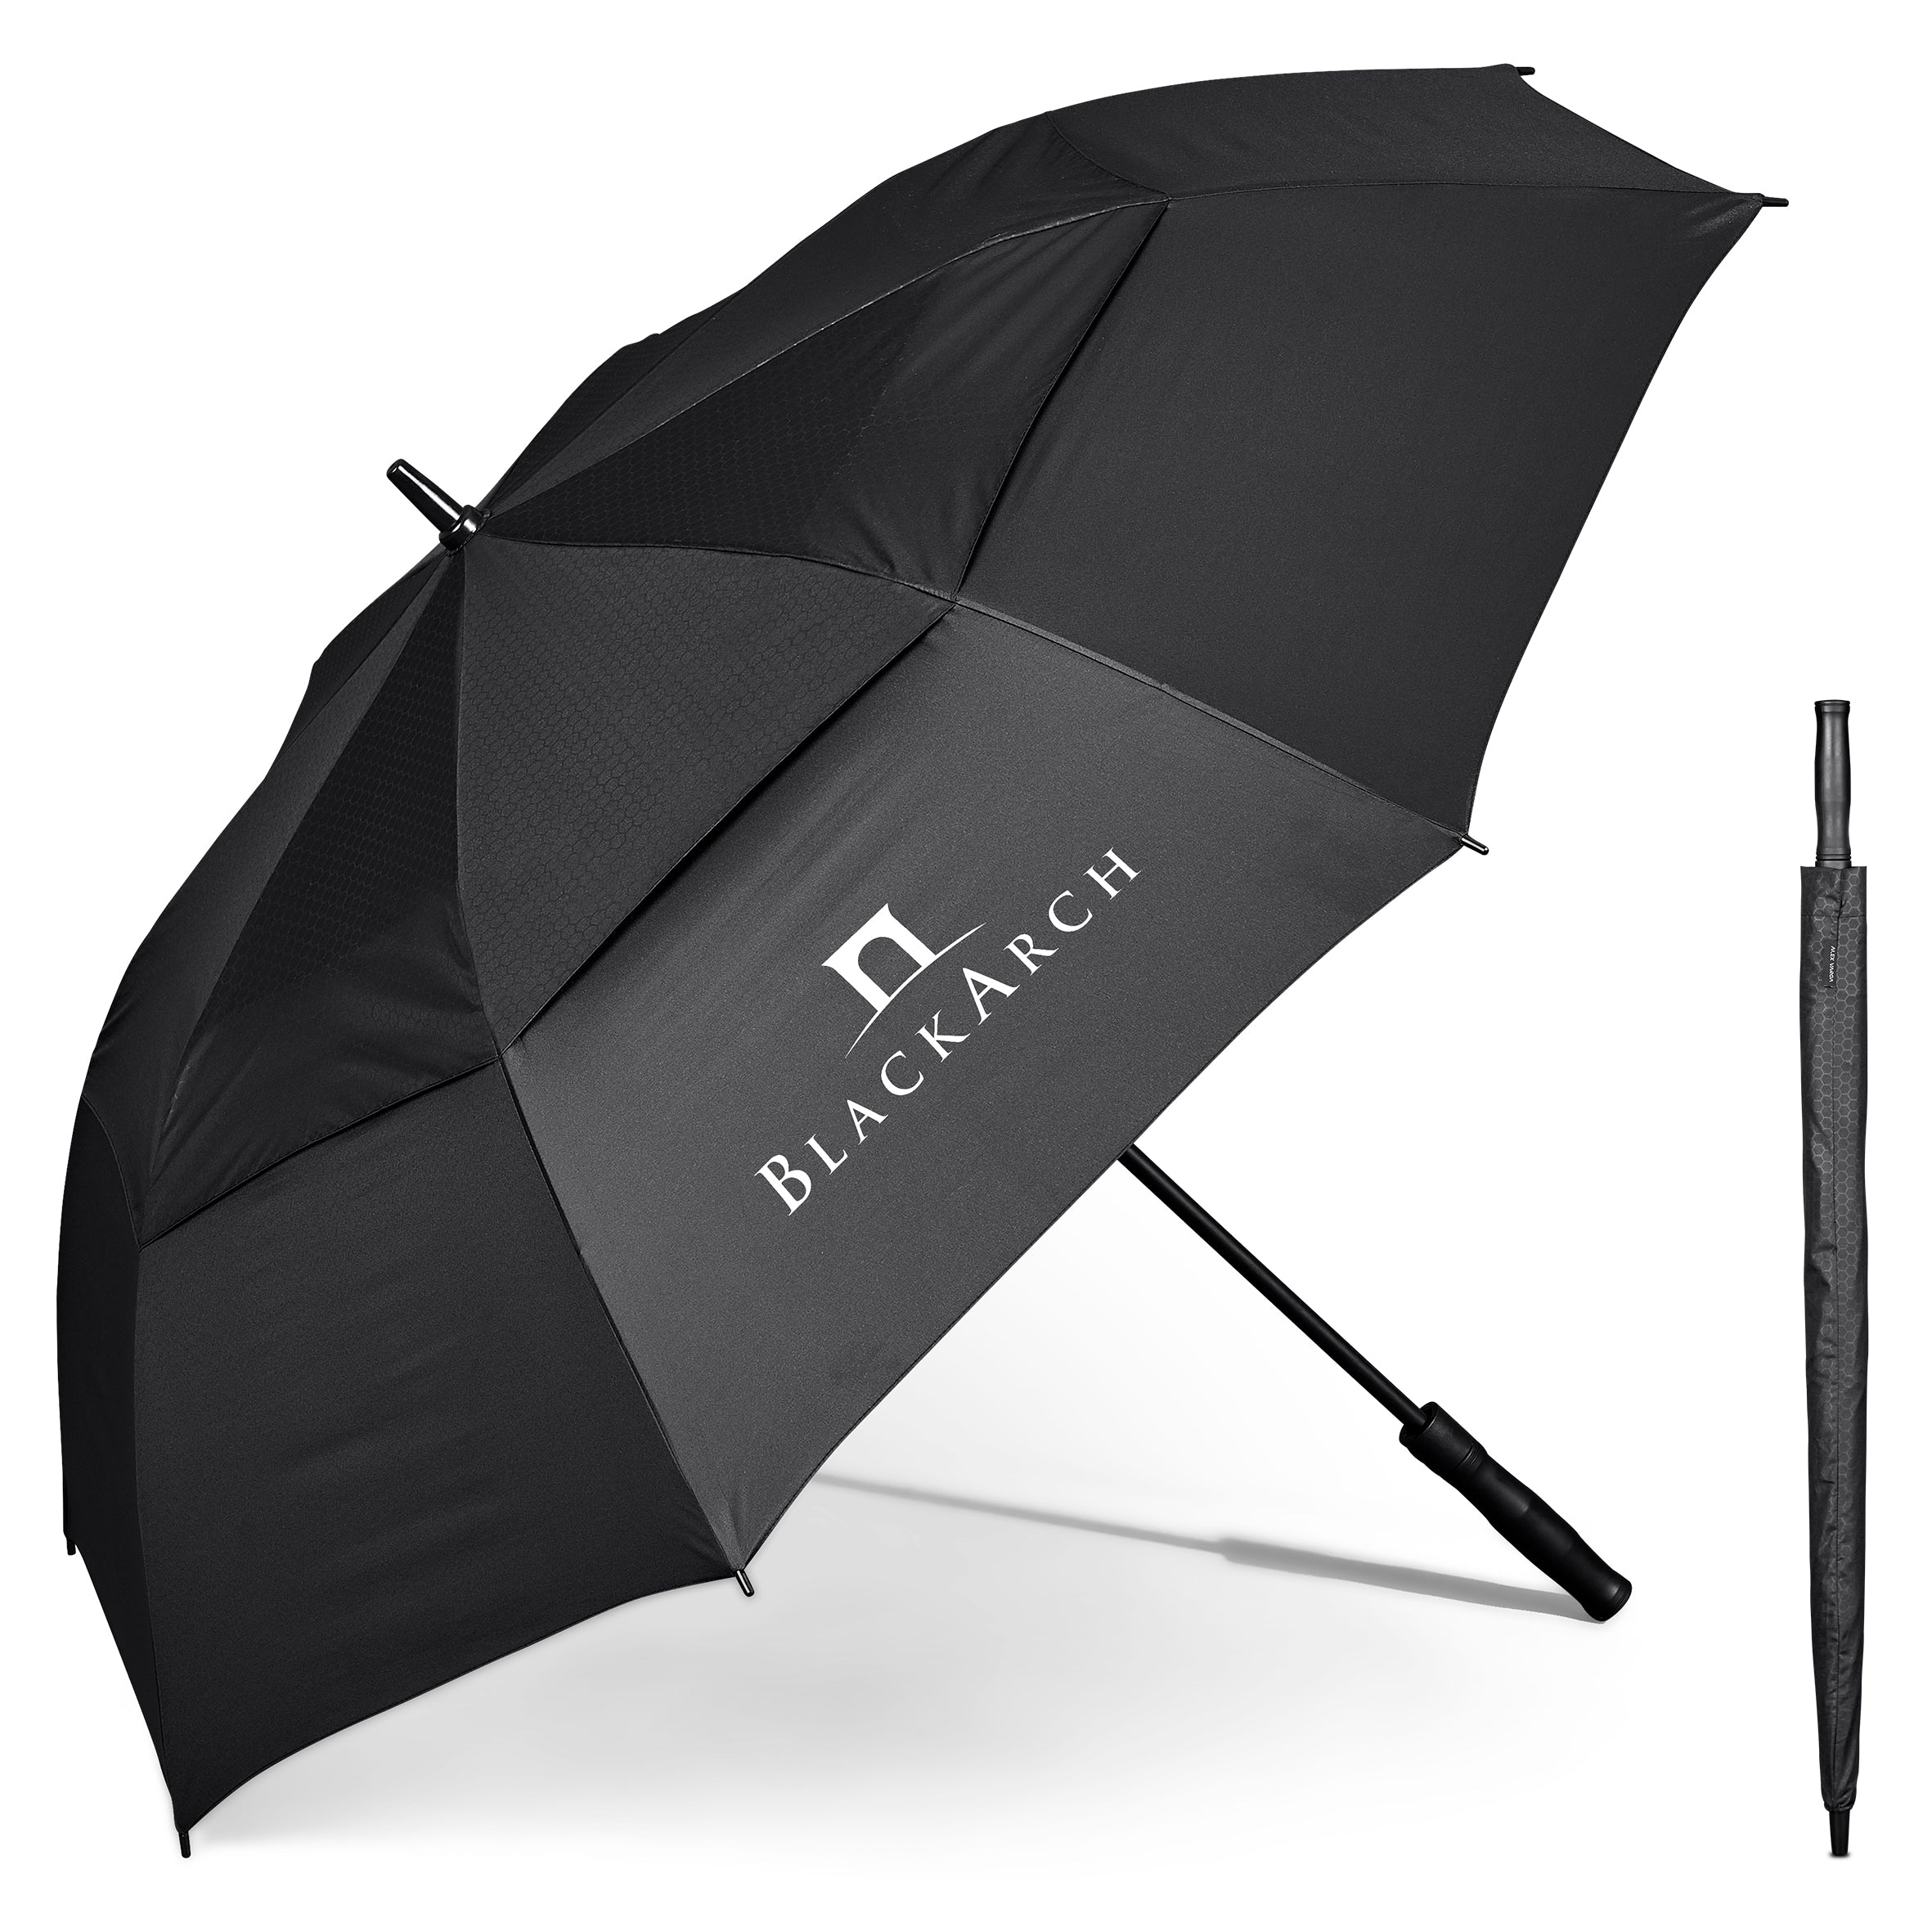 Taranis Auto-Open Golf Umbrella